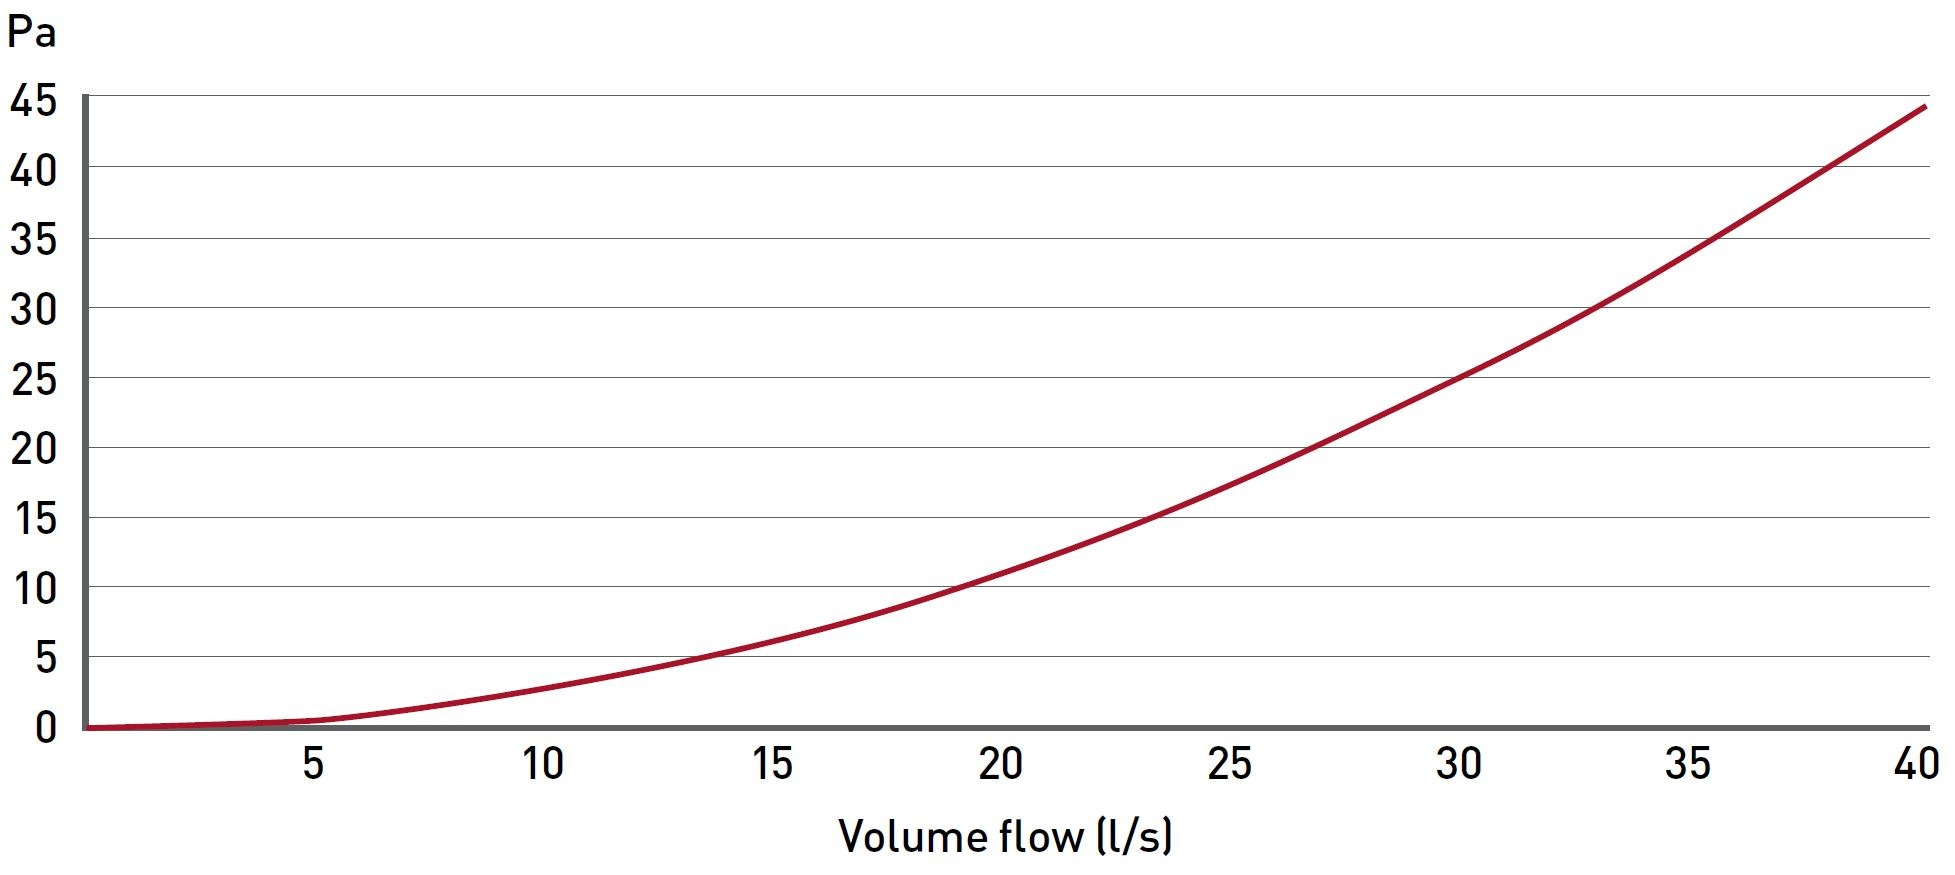 Supertube Adapter volume flow data